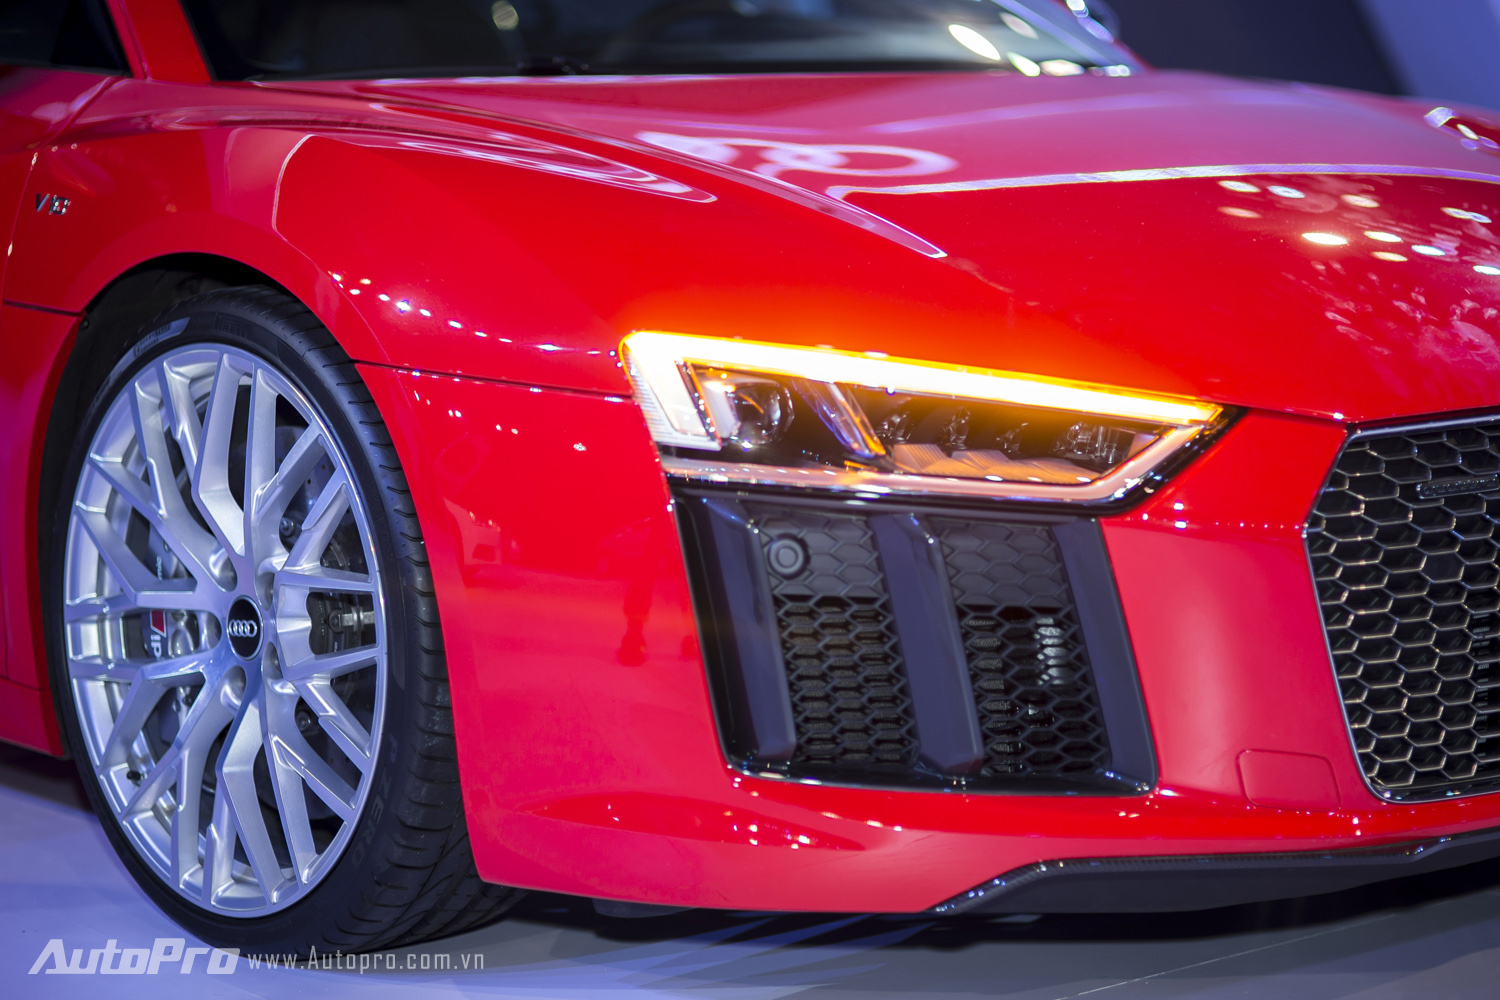 
Công nghệ đèn chiếu sáng full-LED cũng không thể thiếu trên siêu phẩm Audi R8 V10 Plus.
